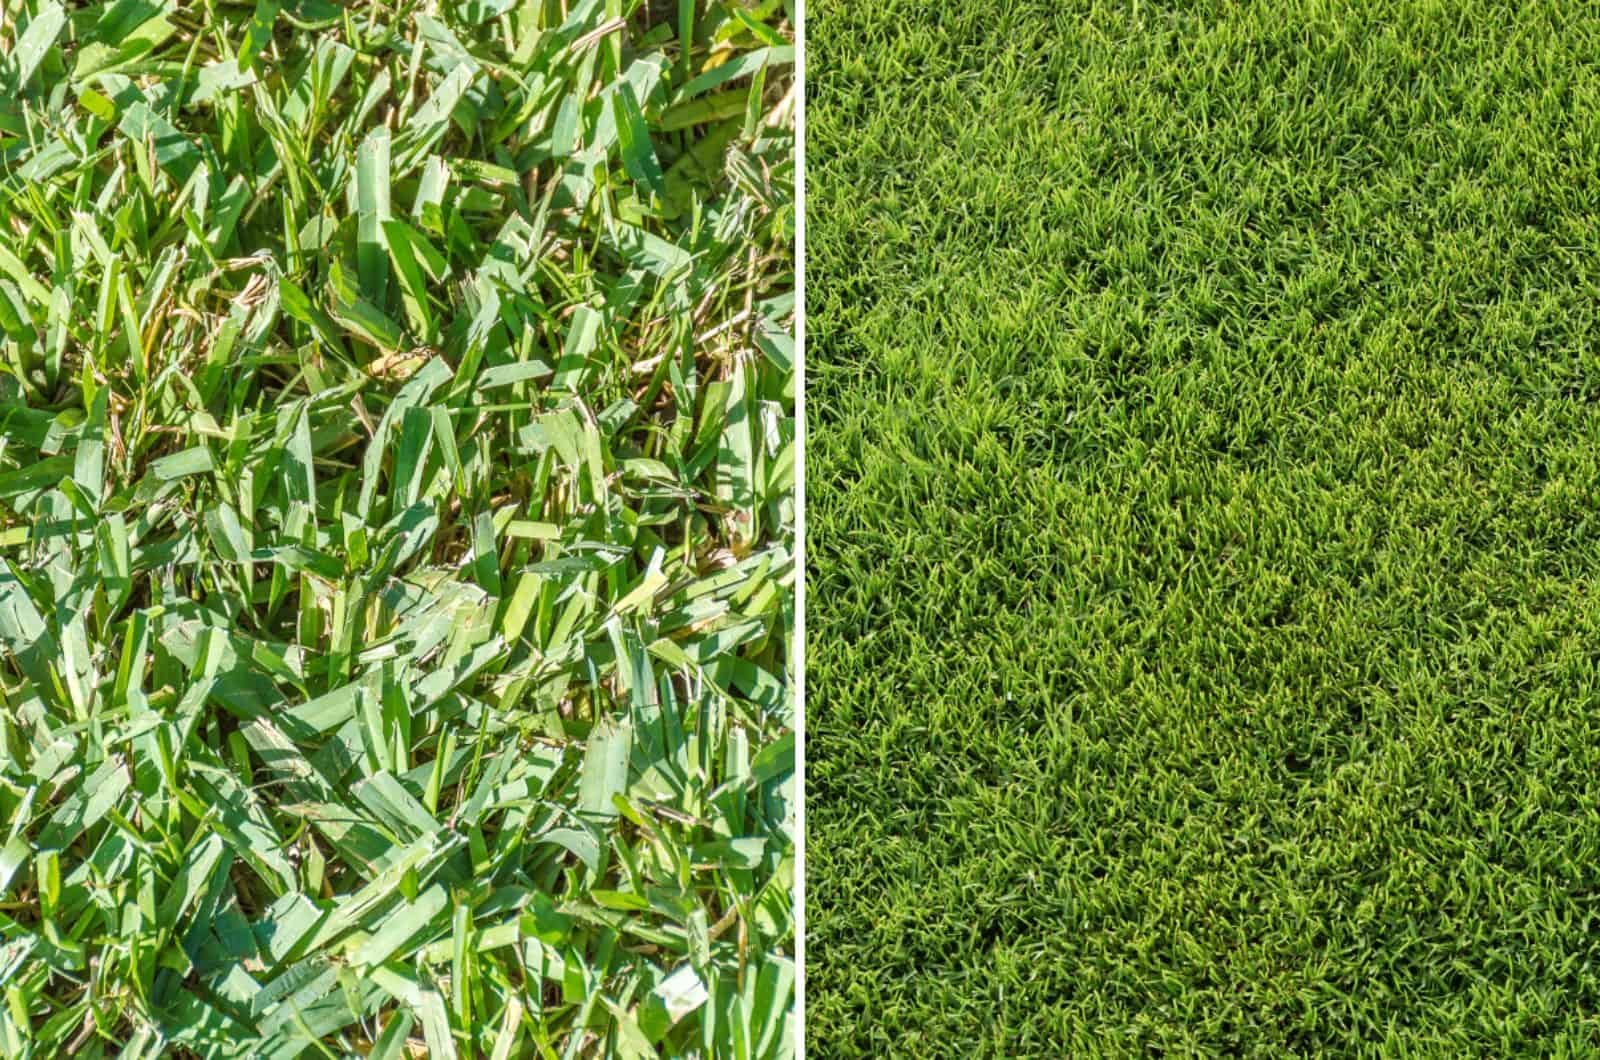 bermuda vs centipede grass comparison